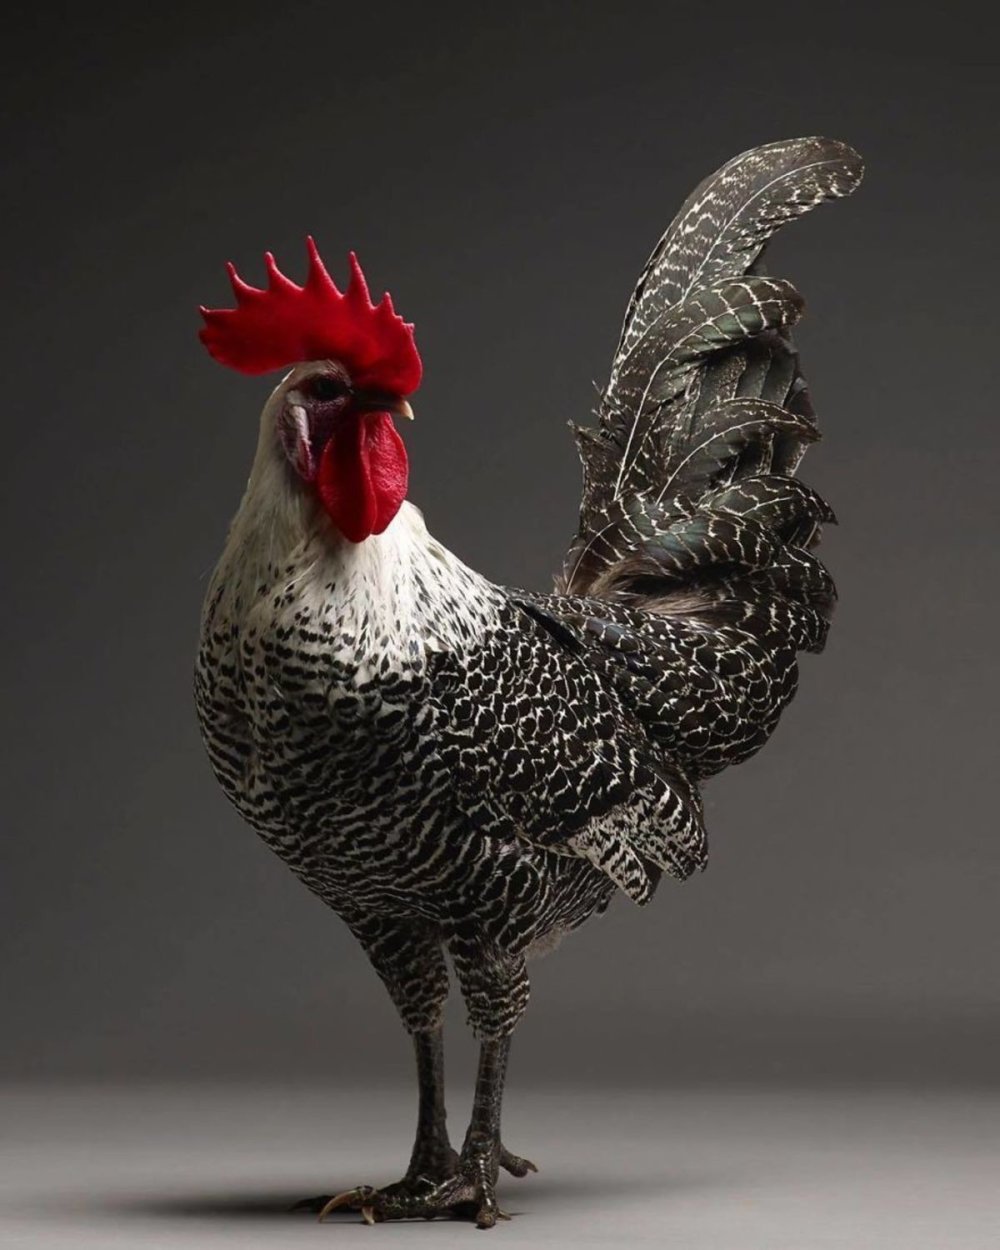 CHICken: superb chicken portraits by Moreno Monti and Matteo Tranchellini